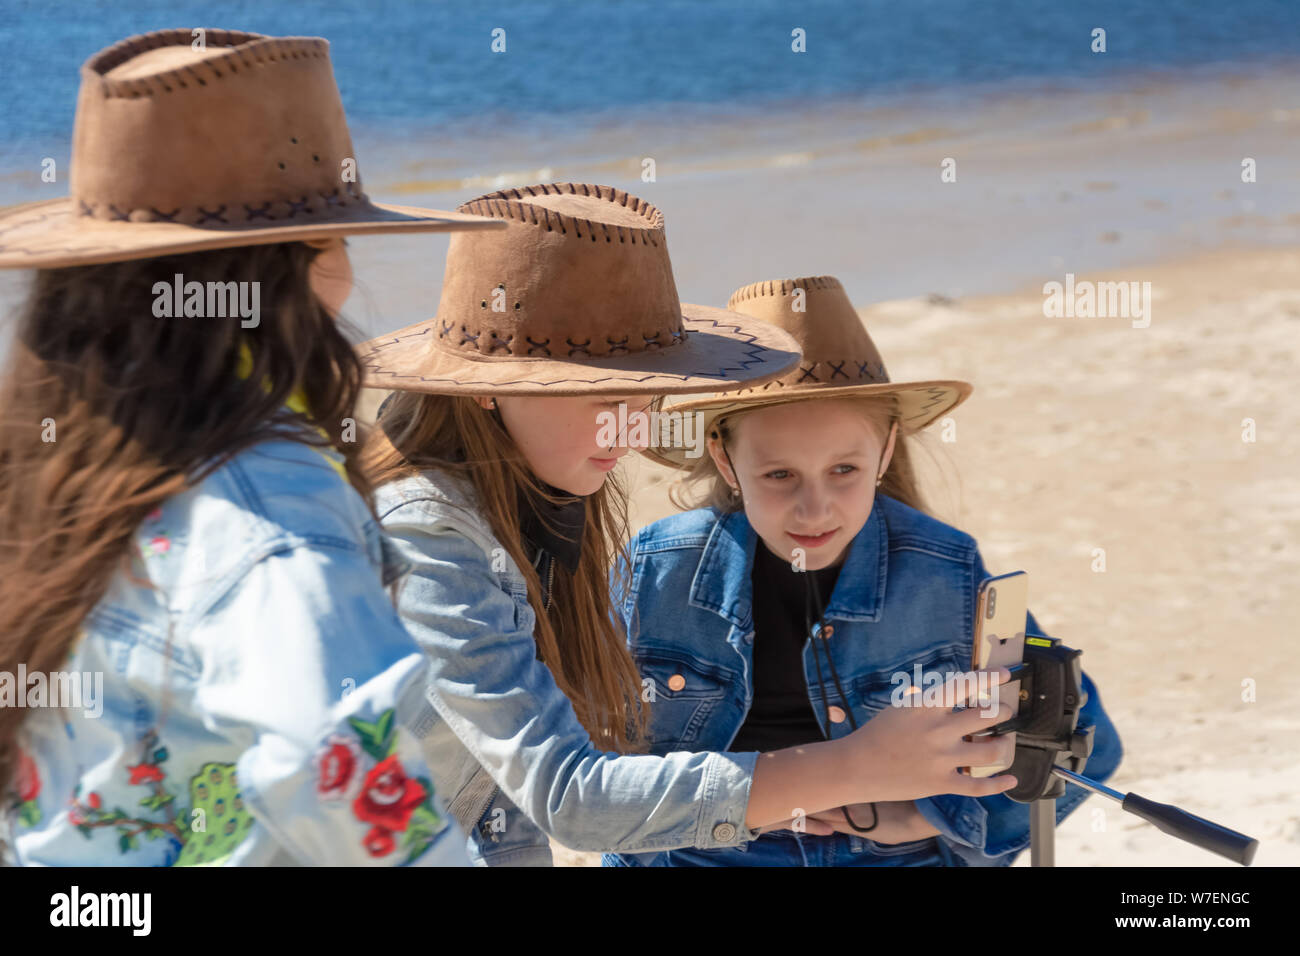 Russland, Kazan - Mai 25, 2019: Drei jugendlich Mädchen nehmen eine selfie auf dem iPhone Xs an einem sonnigen Tag Stockfoto